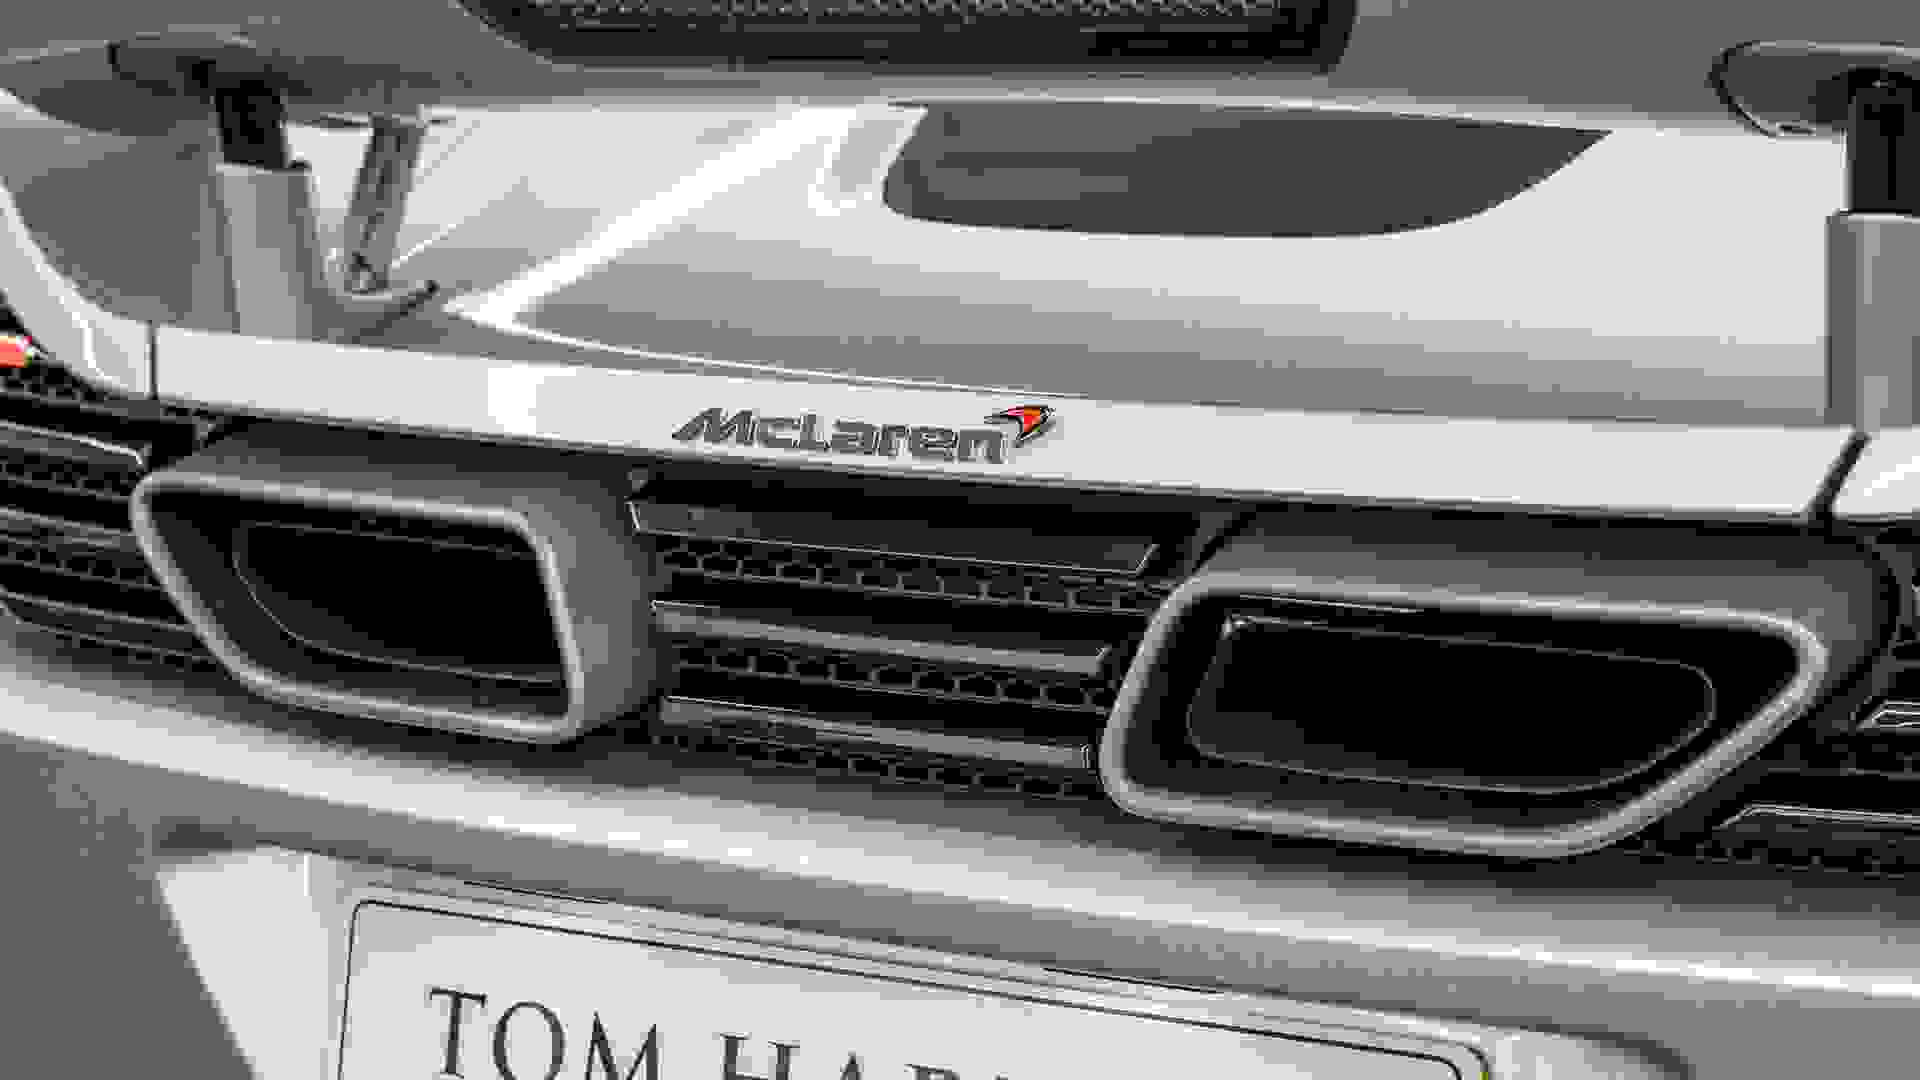 McLaren MP4-12C Photo 28583d1e-7454-4a00-8ff0-7275dc1d354e.jpg